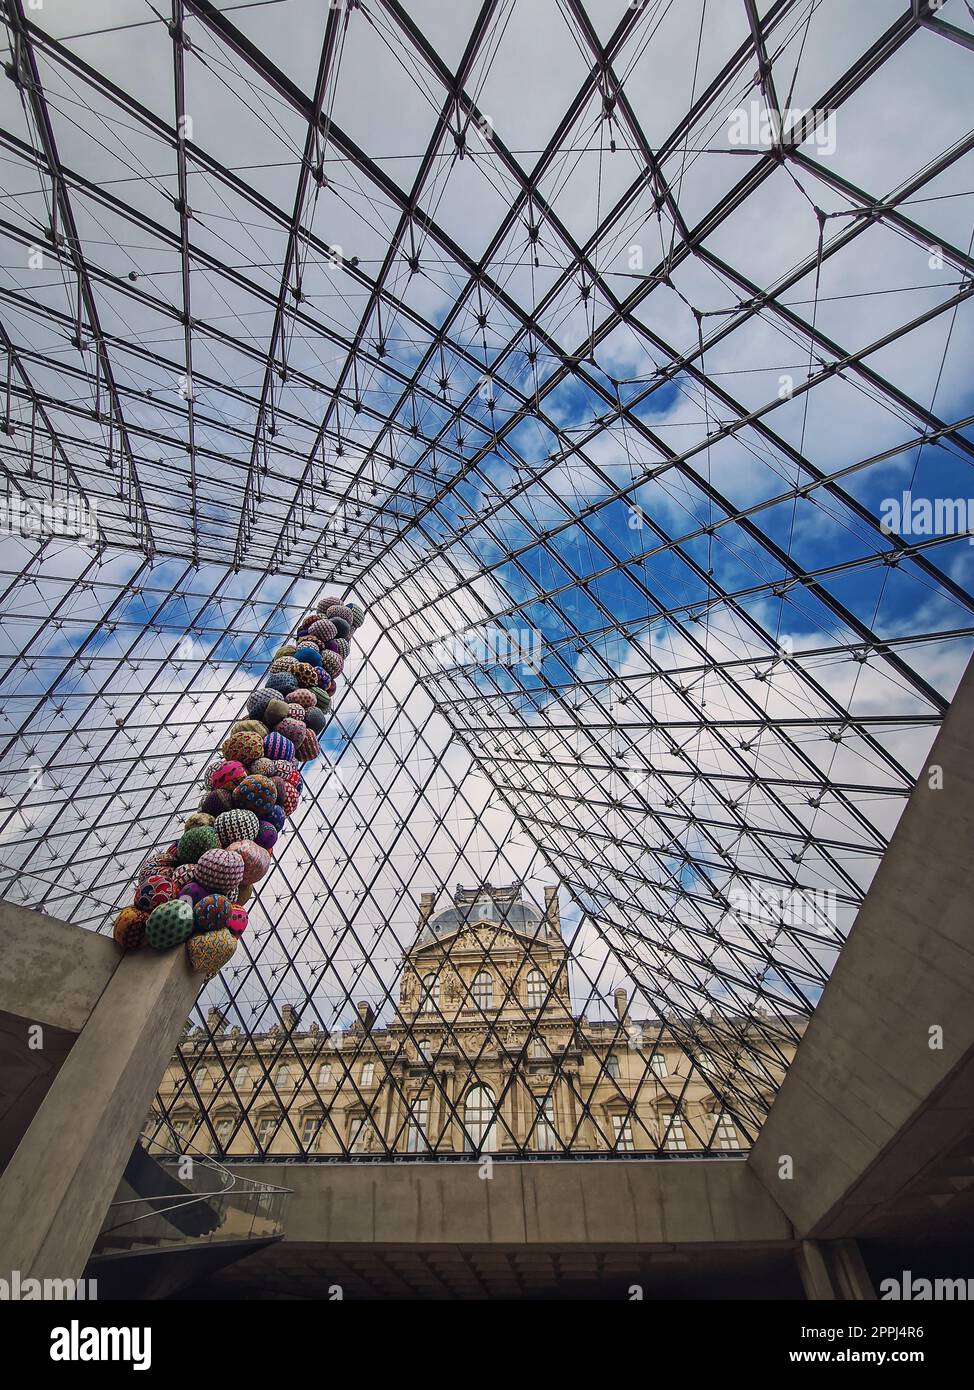 Unter der Glaspyramide des Louvre, vertikaler Hintergrund. Wunderschöne architektonische Details mit einer abstrakten Mischung aus klassischem und modernem Stil Stockfoto